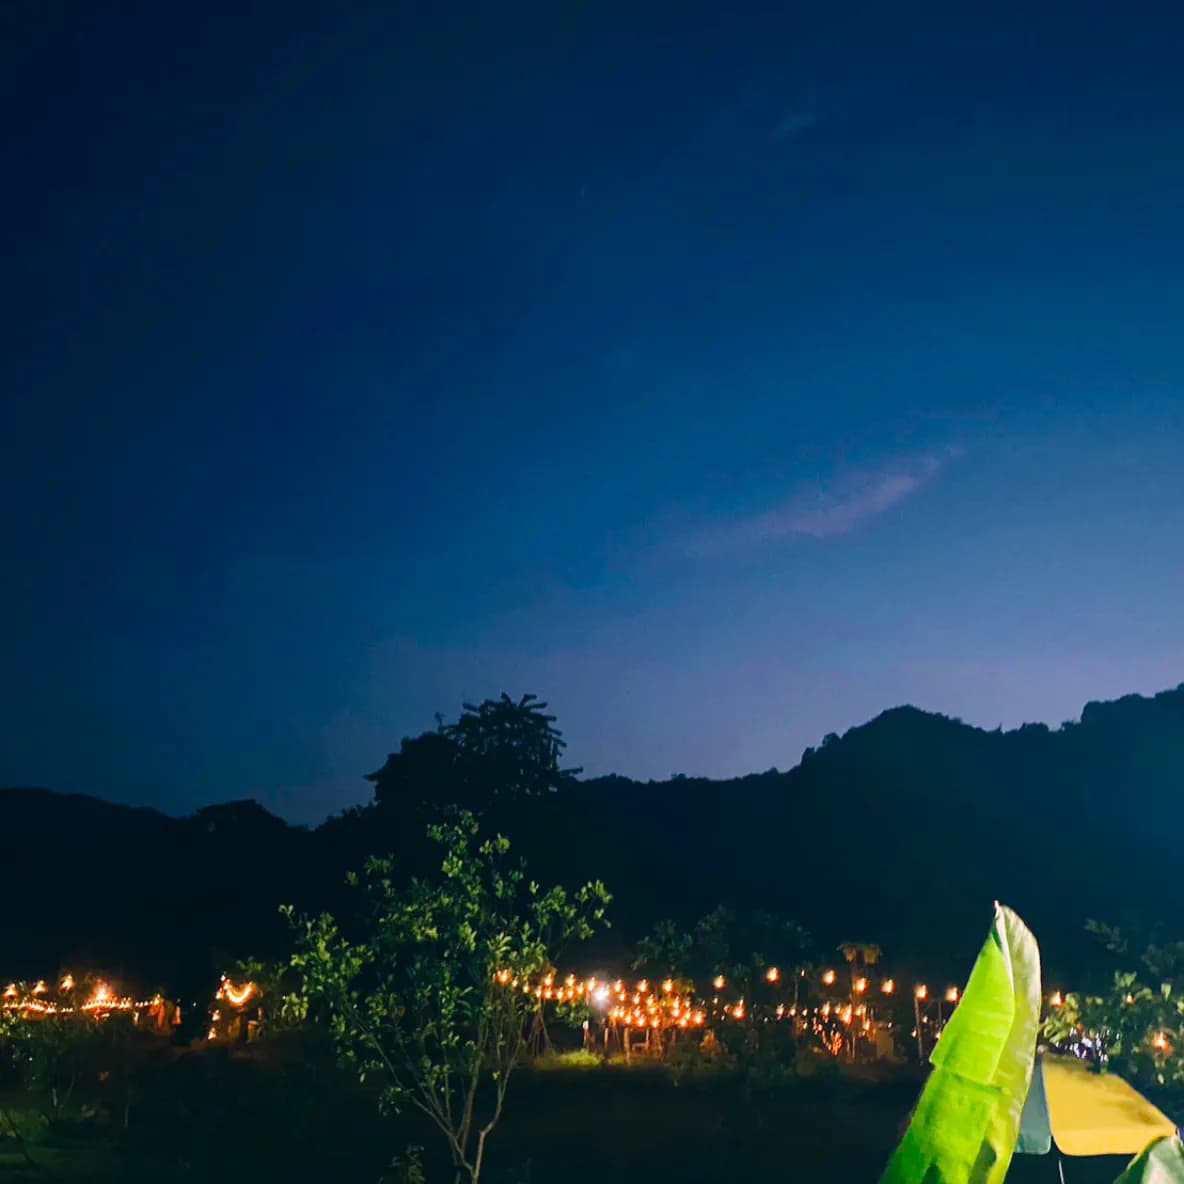 รูป สวนภูเขาล้อมแคมป์ปิ้ง / Suan PhuKaoLorm Camping